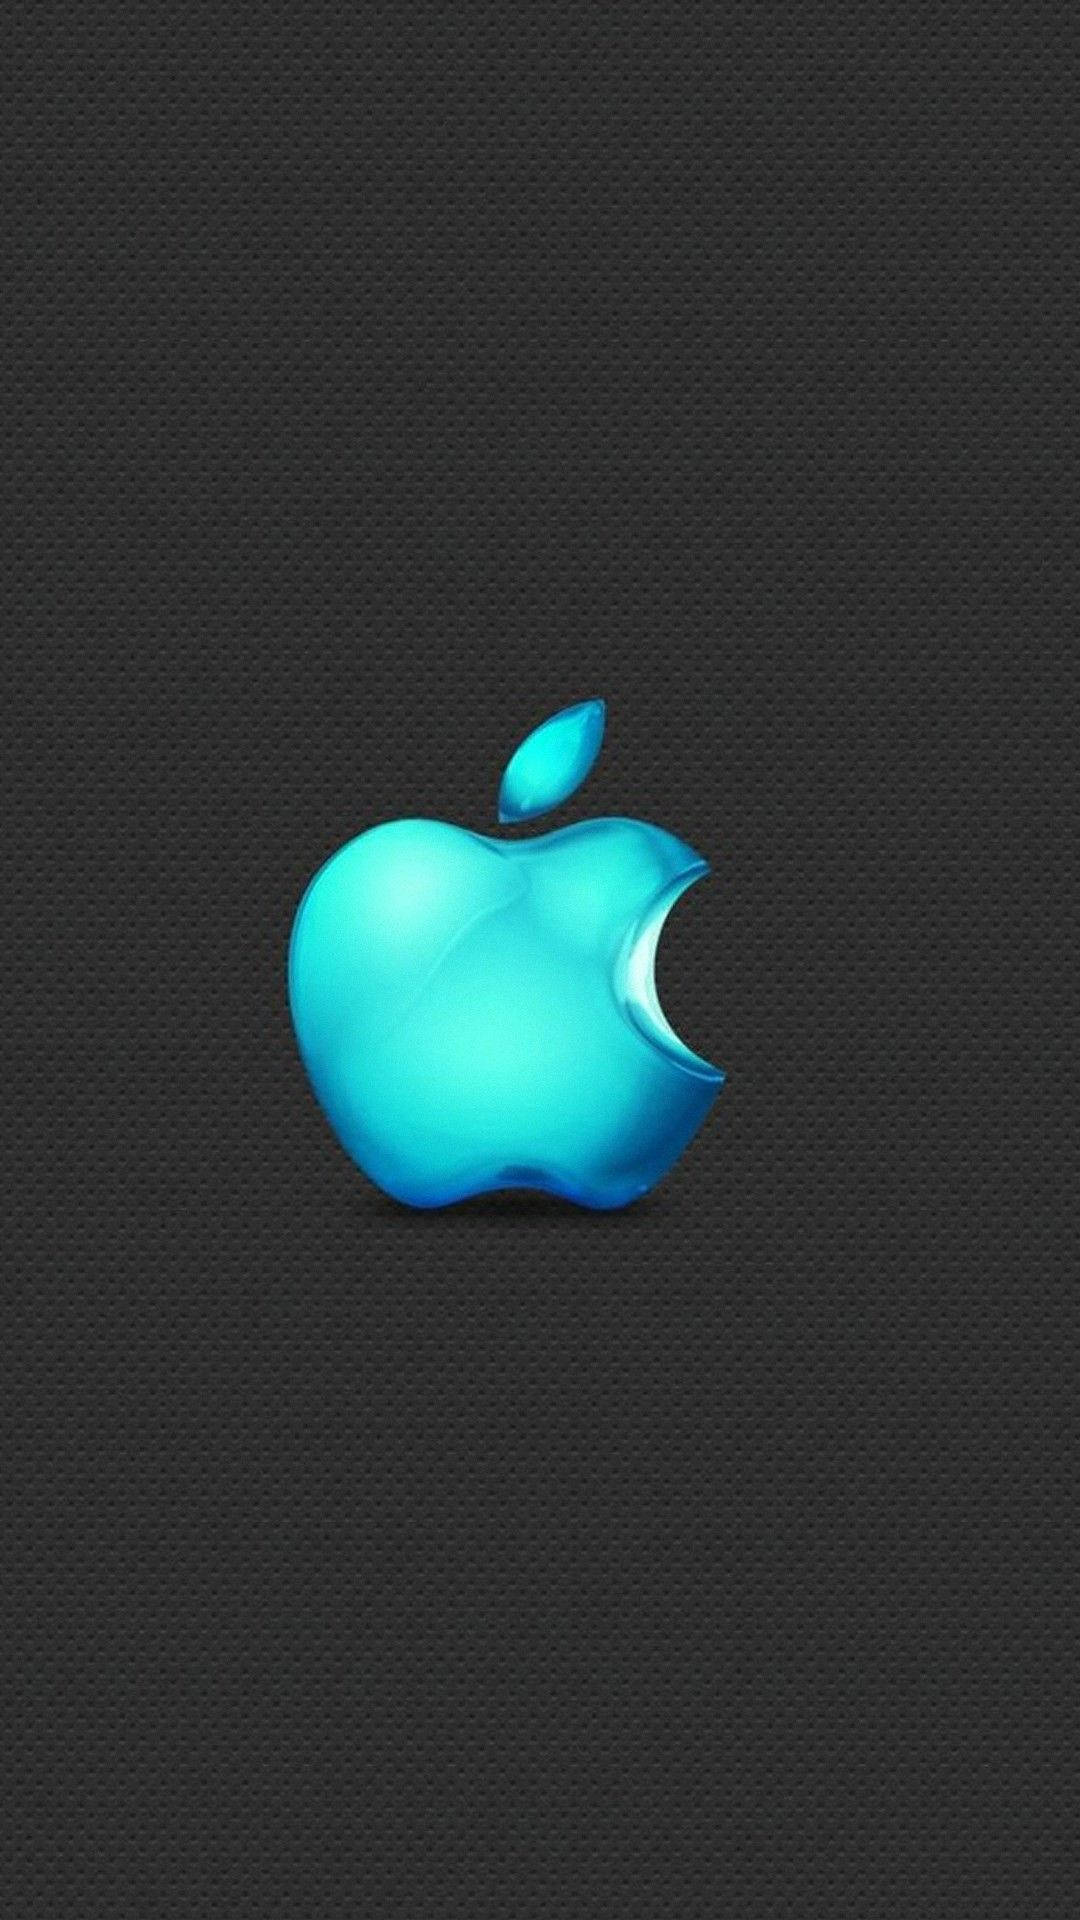 Papelde Parede De Celular Com O Logotipo Em 3d Da Apple Na Cor Azul Claro. Papel de Parede